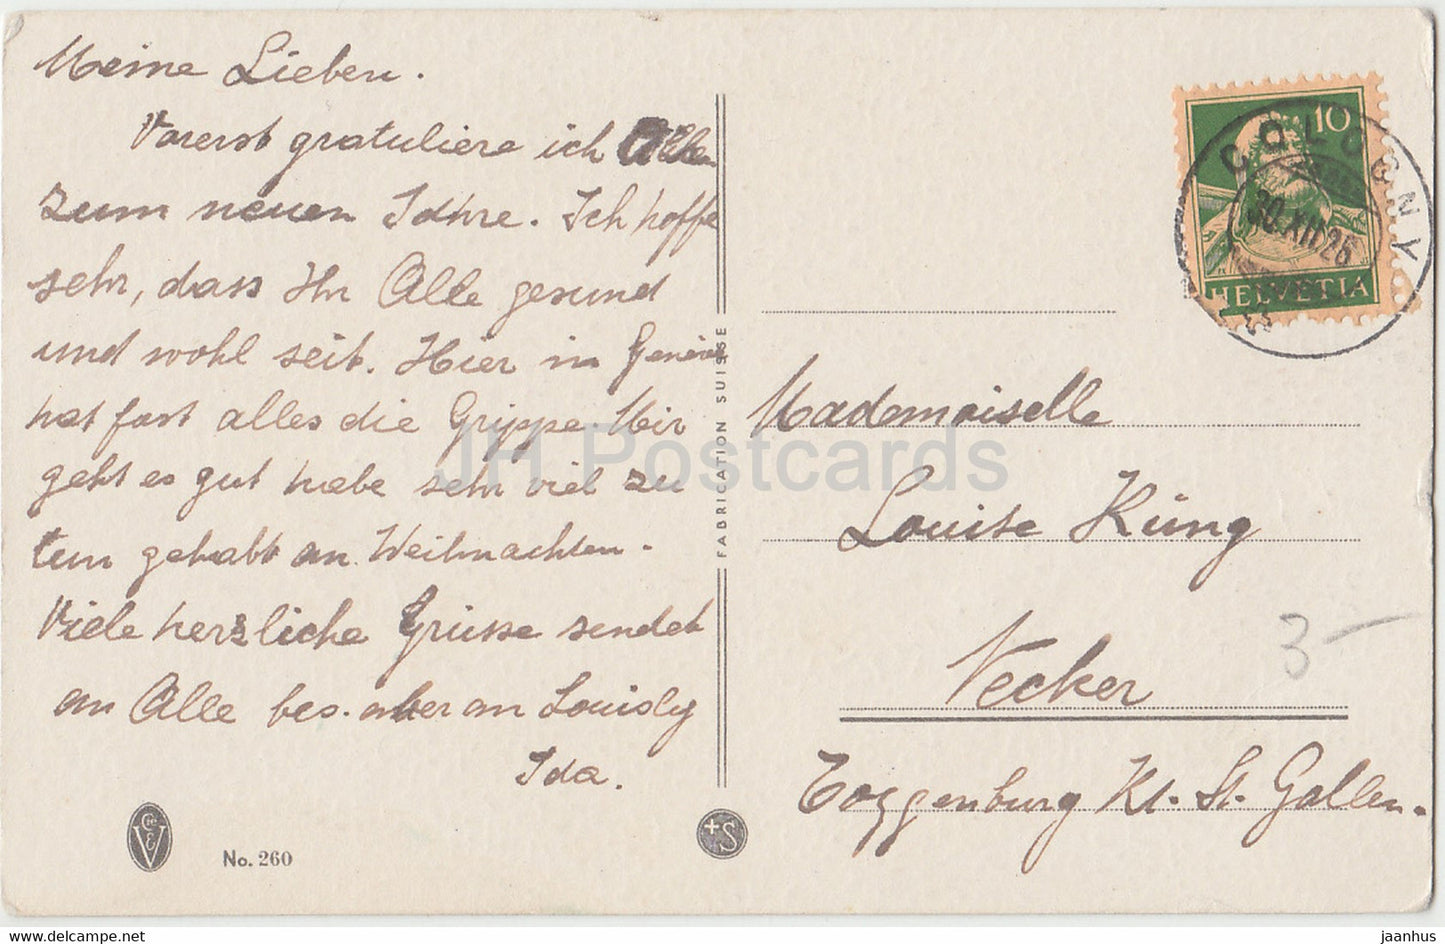 Neujahrsgrußkarte – Bonne Annee – Blumen in einer Vase – alte Postkarte – 1926 – Schweiz – gebraucht